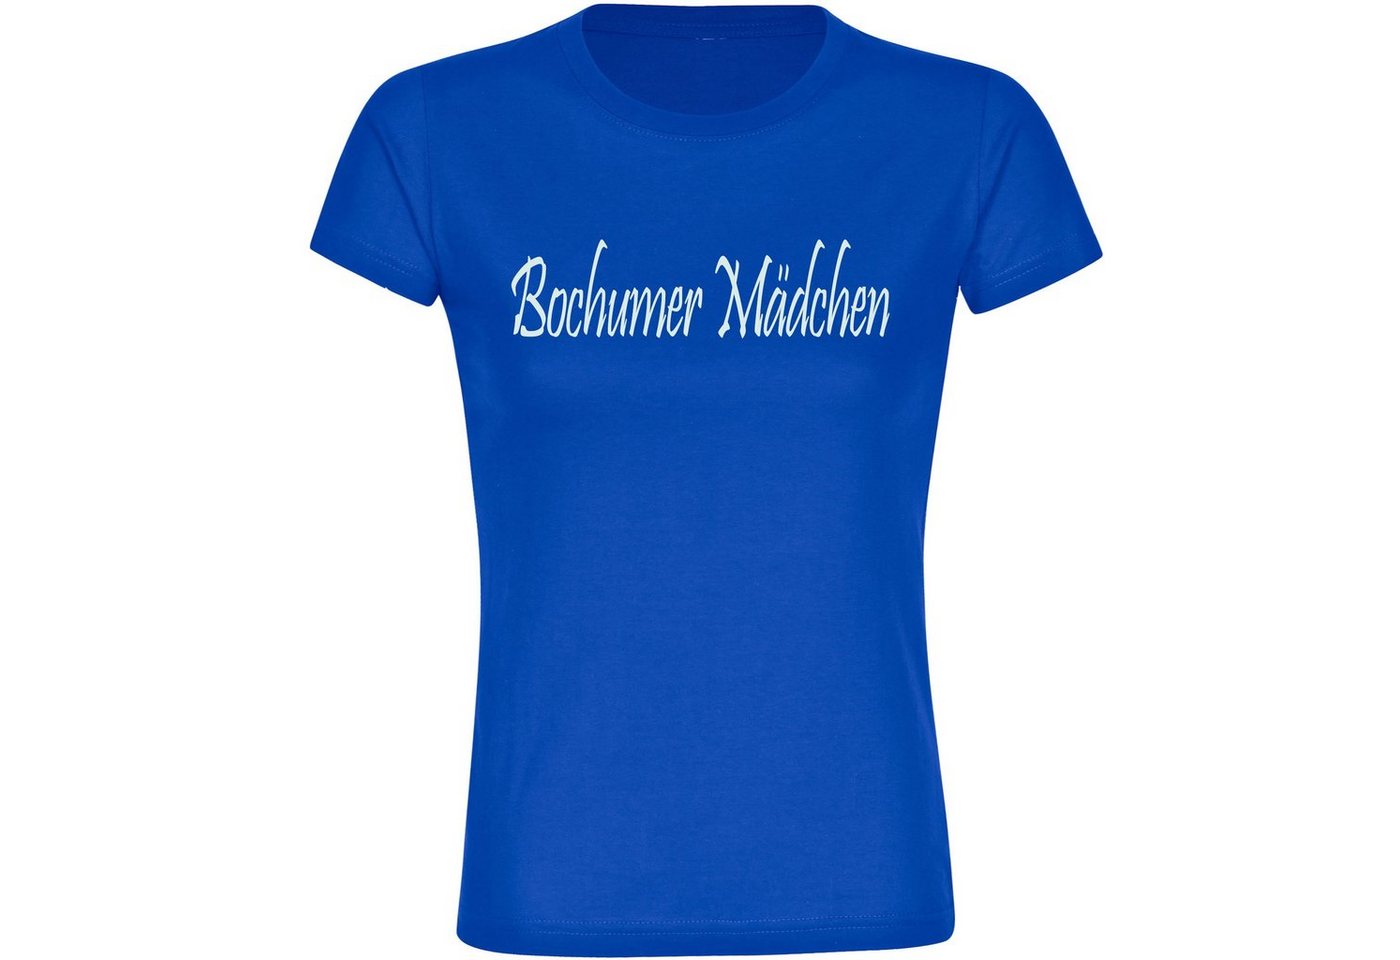 multifanshop T-Shirt Damen Bochum - Bochumer Mädchen - Frauen von multifanshop